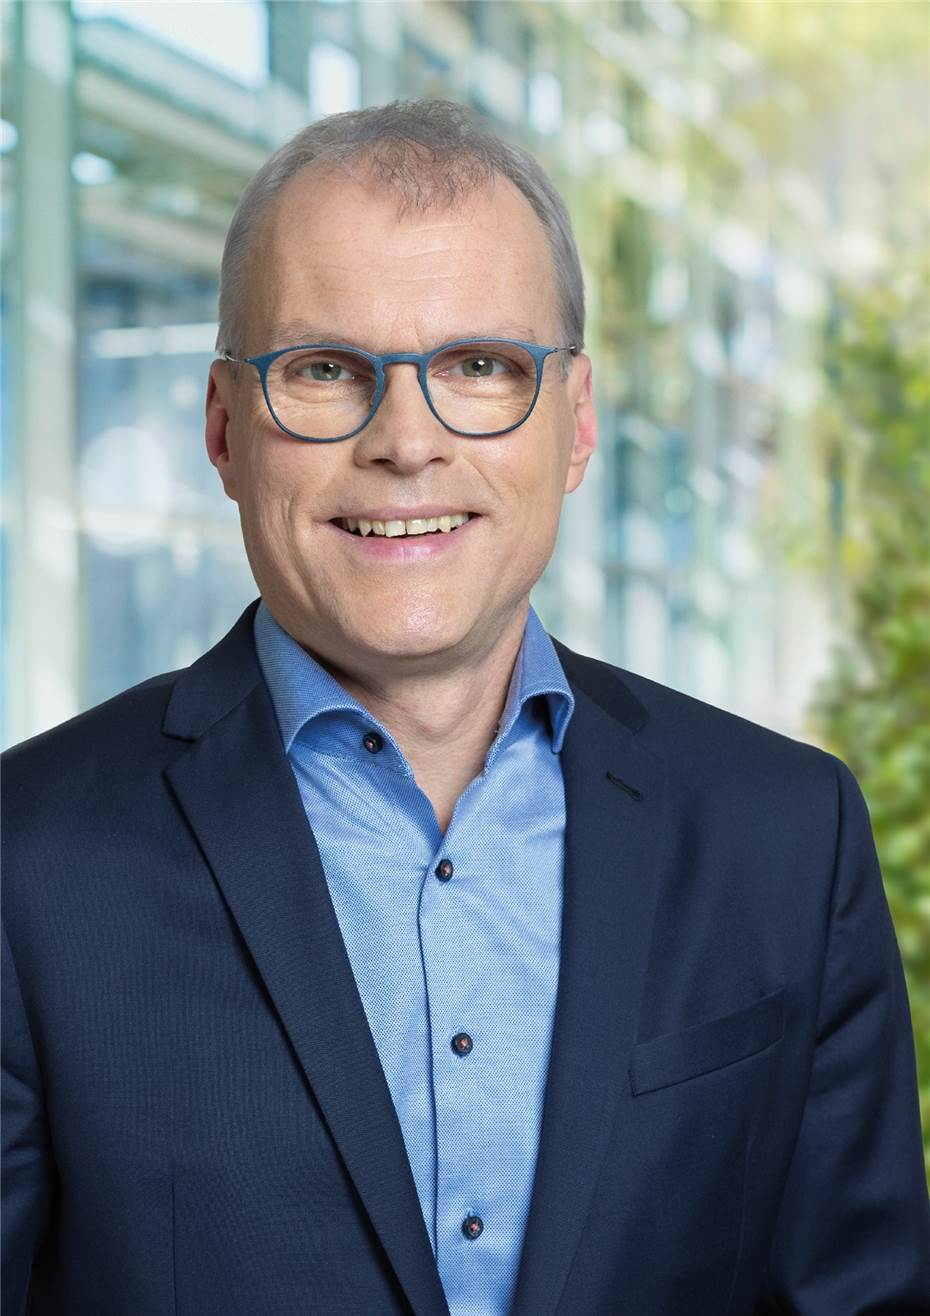 Landtagswahl in NRW: Oliver Krauß gewinnt im Wahlkreis 27